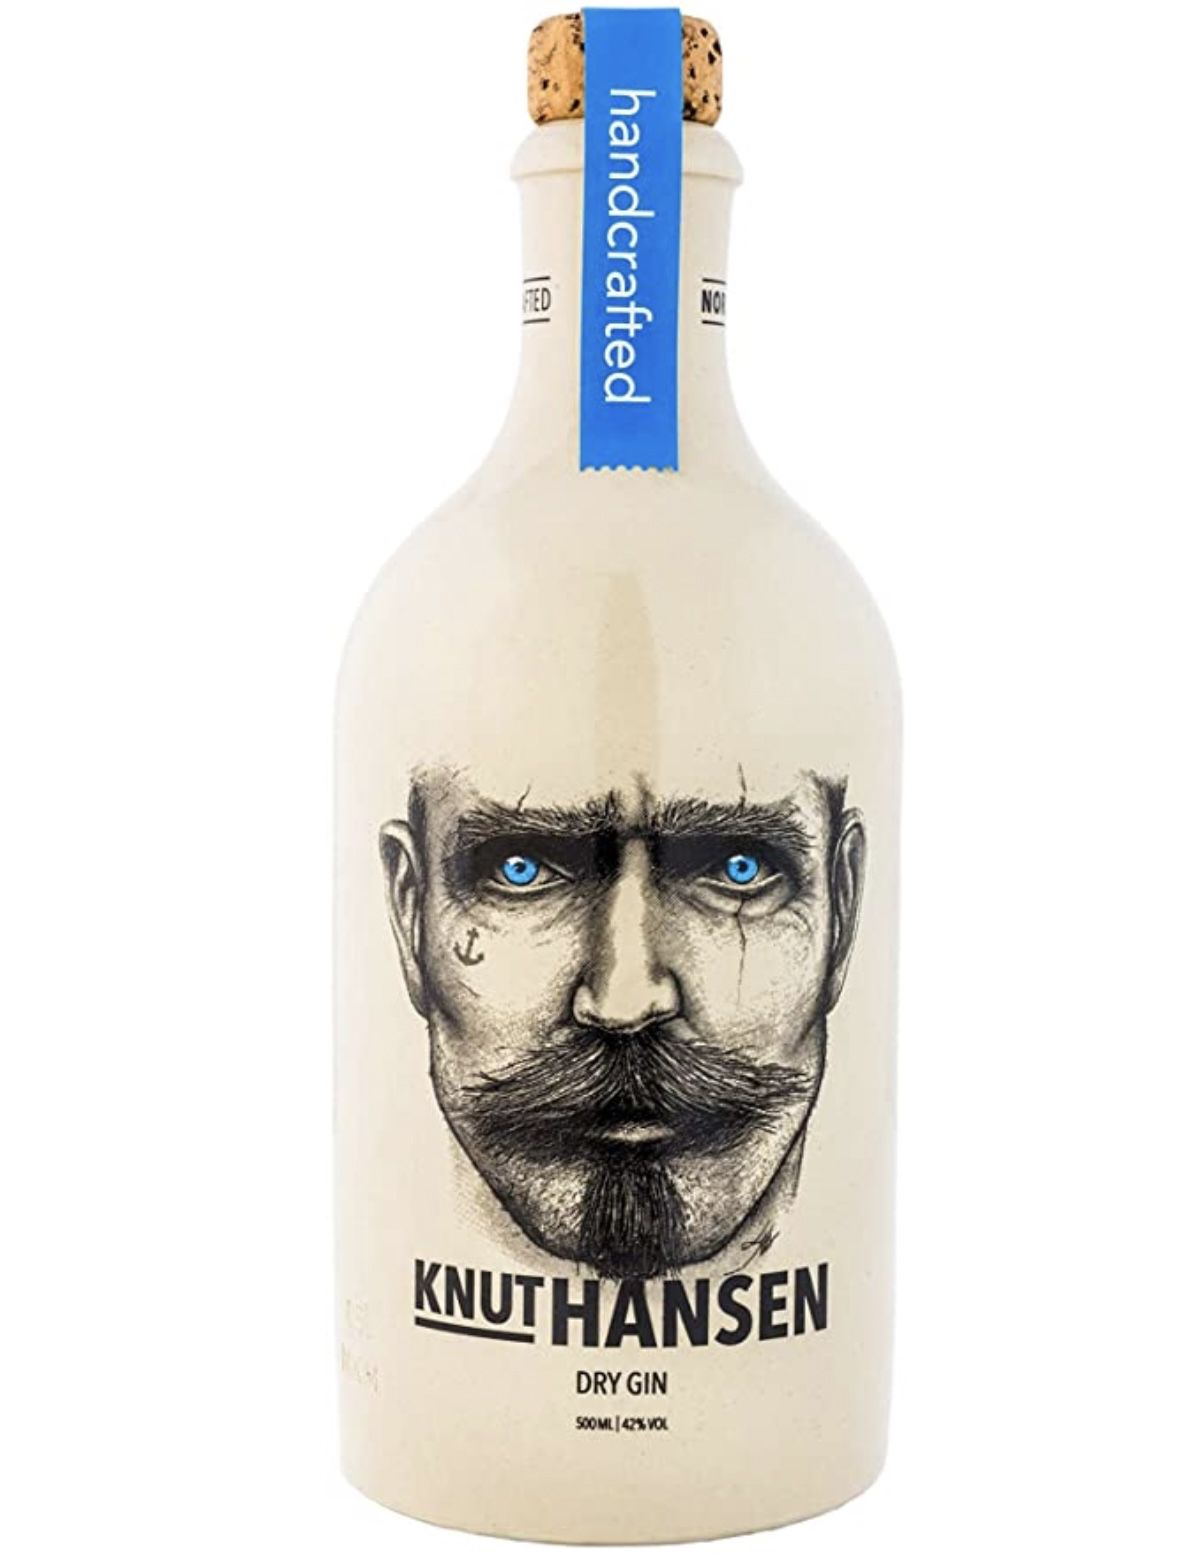 Knut Hansen handcrafted Dry Gin   in 0,5 Liter Keramik Flasche ab 25,19€ (statt 31€)  Prime